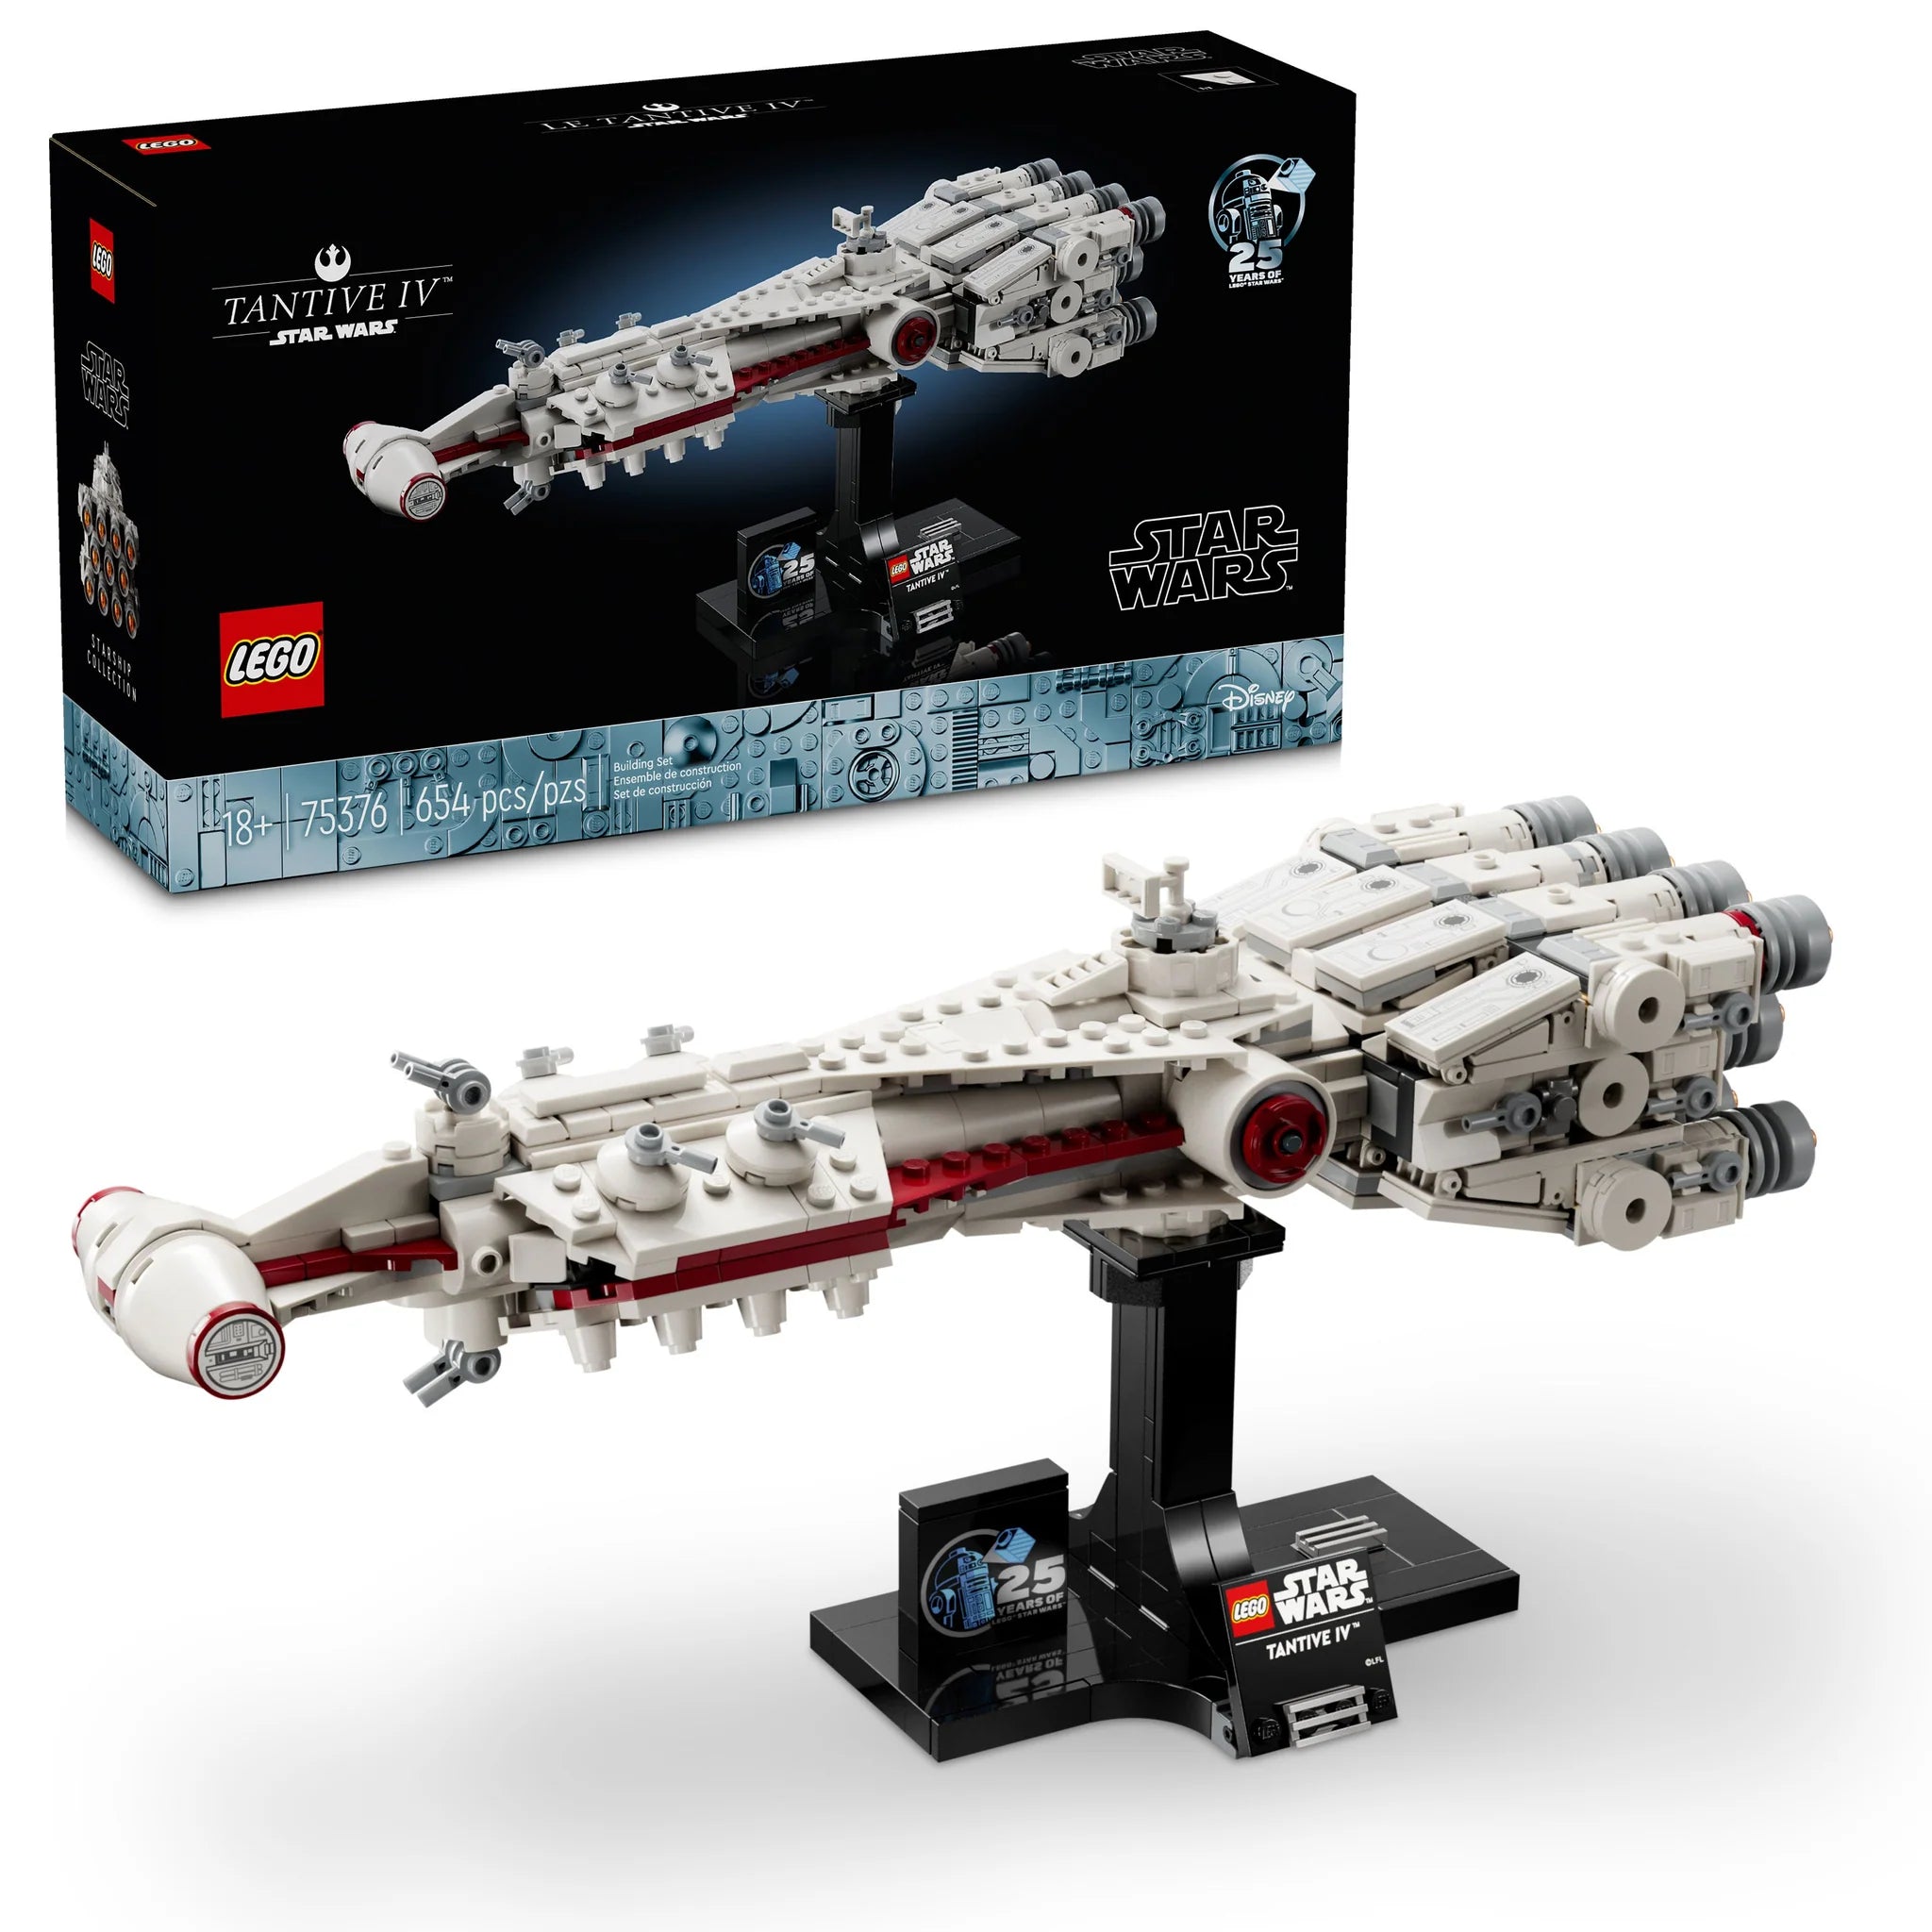 LEGO Star Wars Tantive IV™ Building Set (75376)